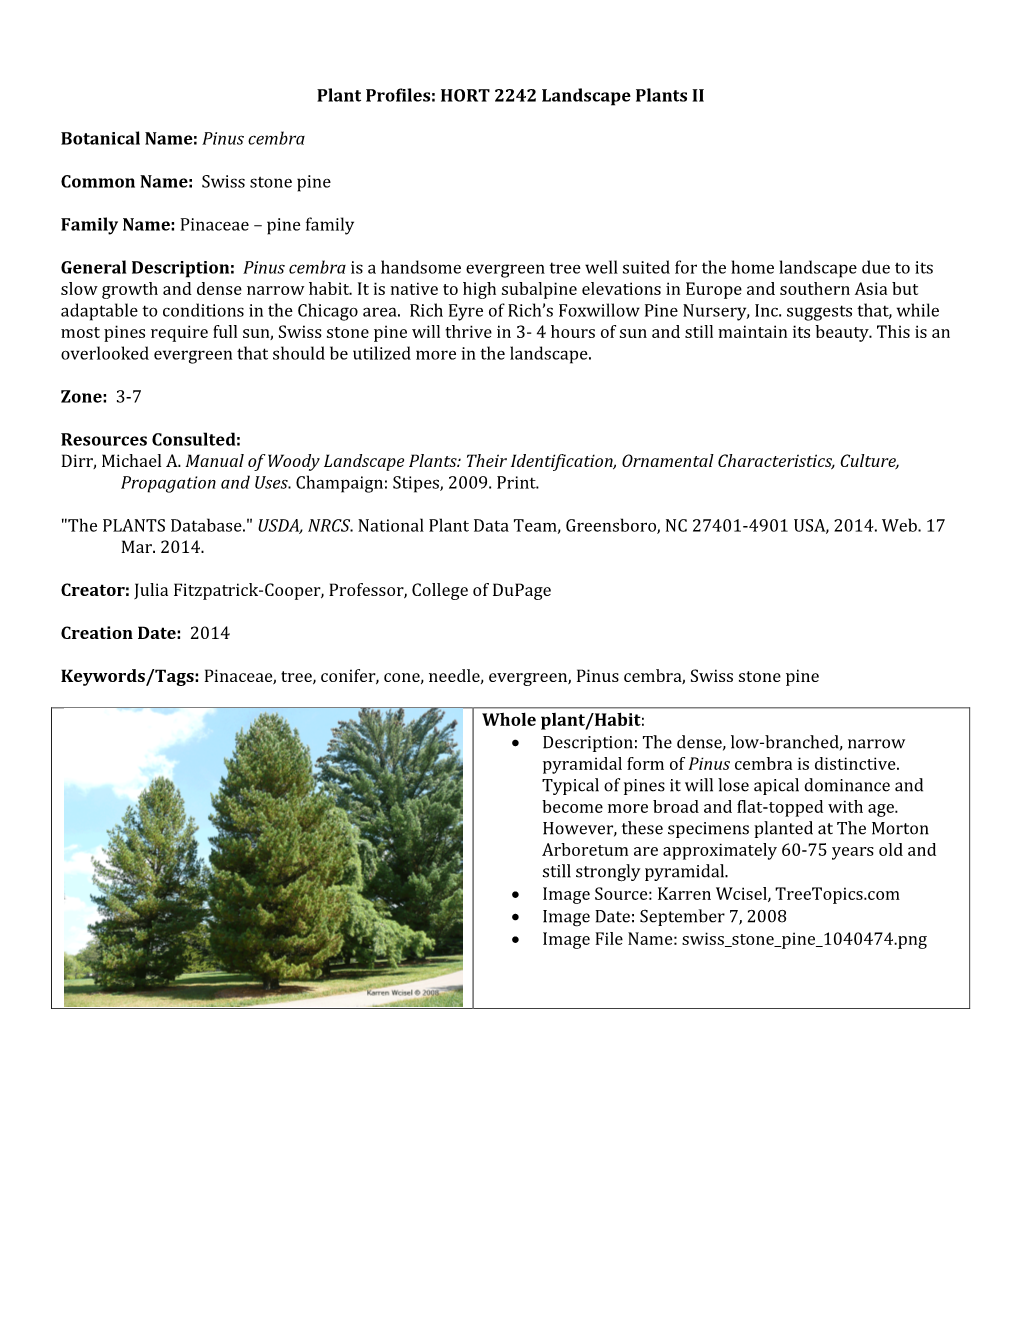 Pinus Cembra Common Name: Swiss Stone Pine Family Name